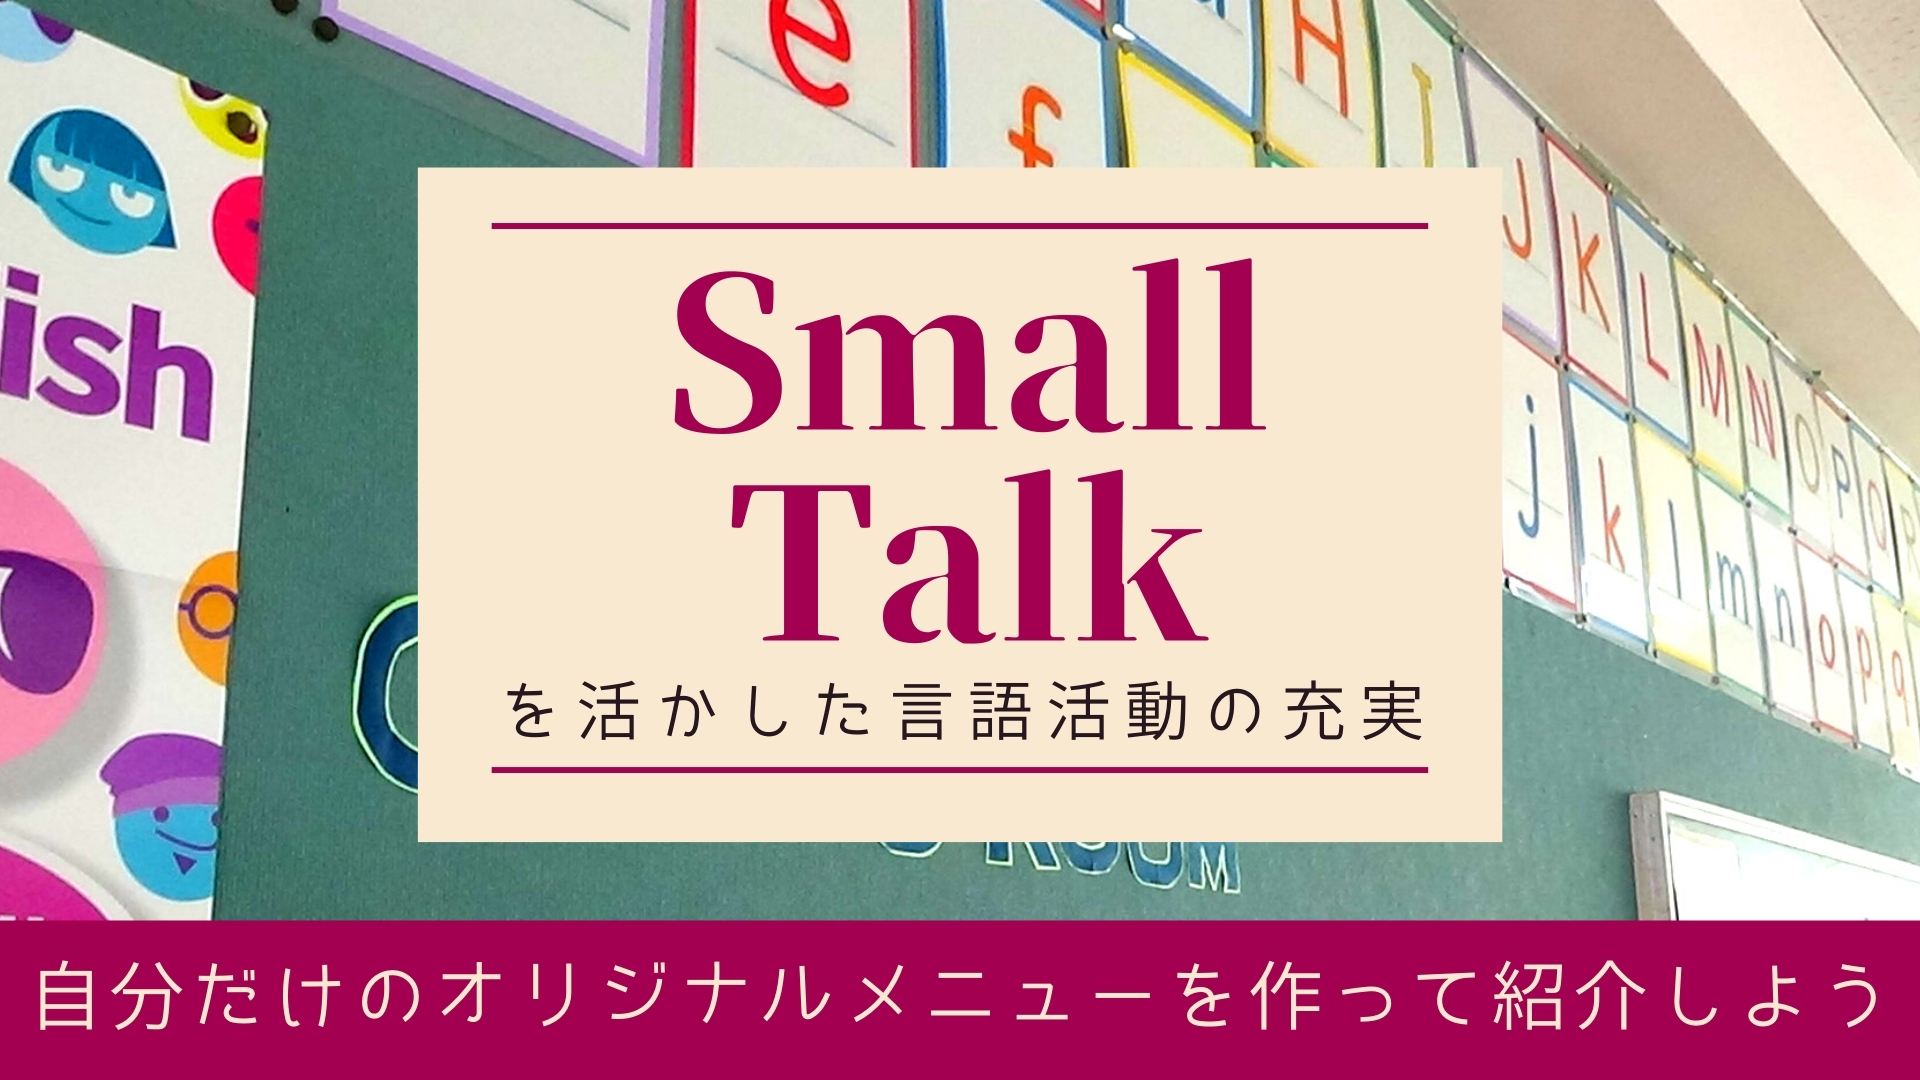 Small Talkを活かした言語活動の充実